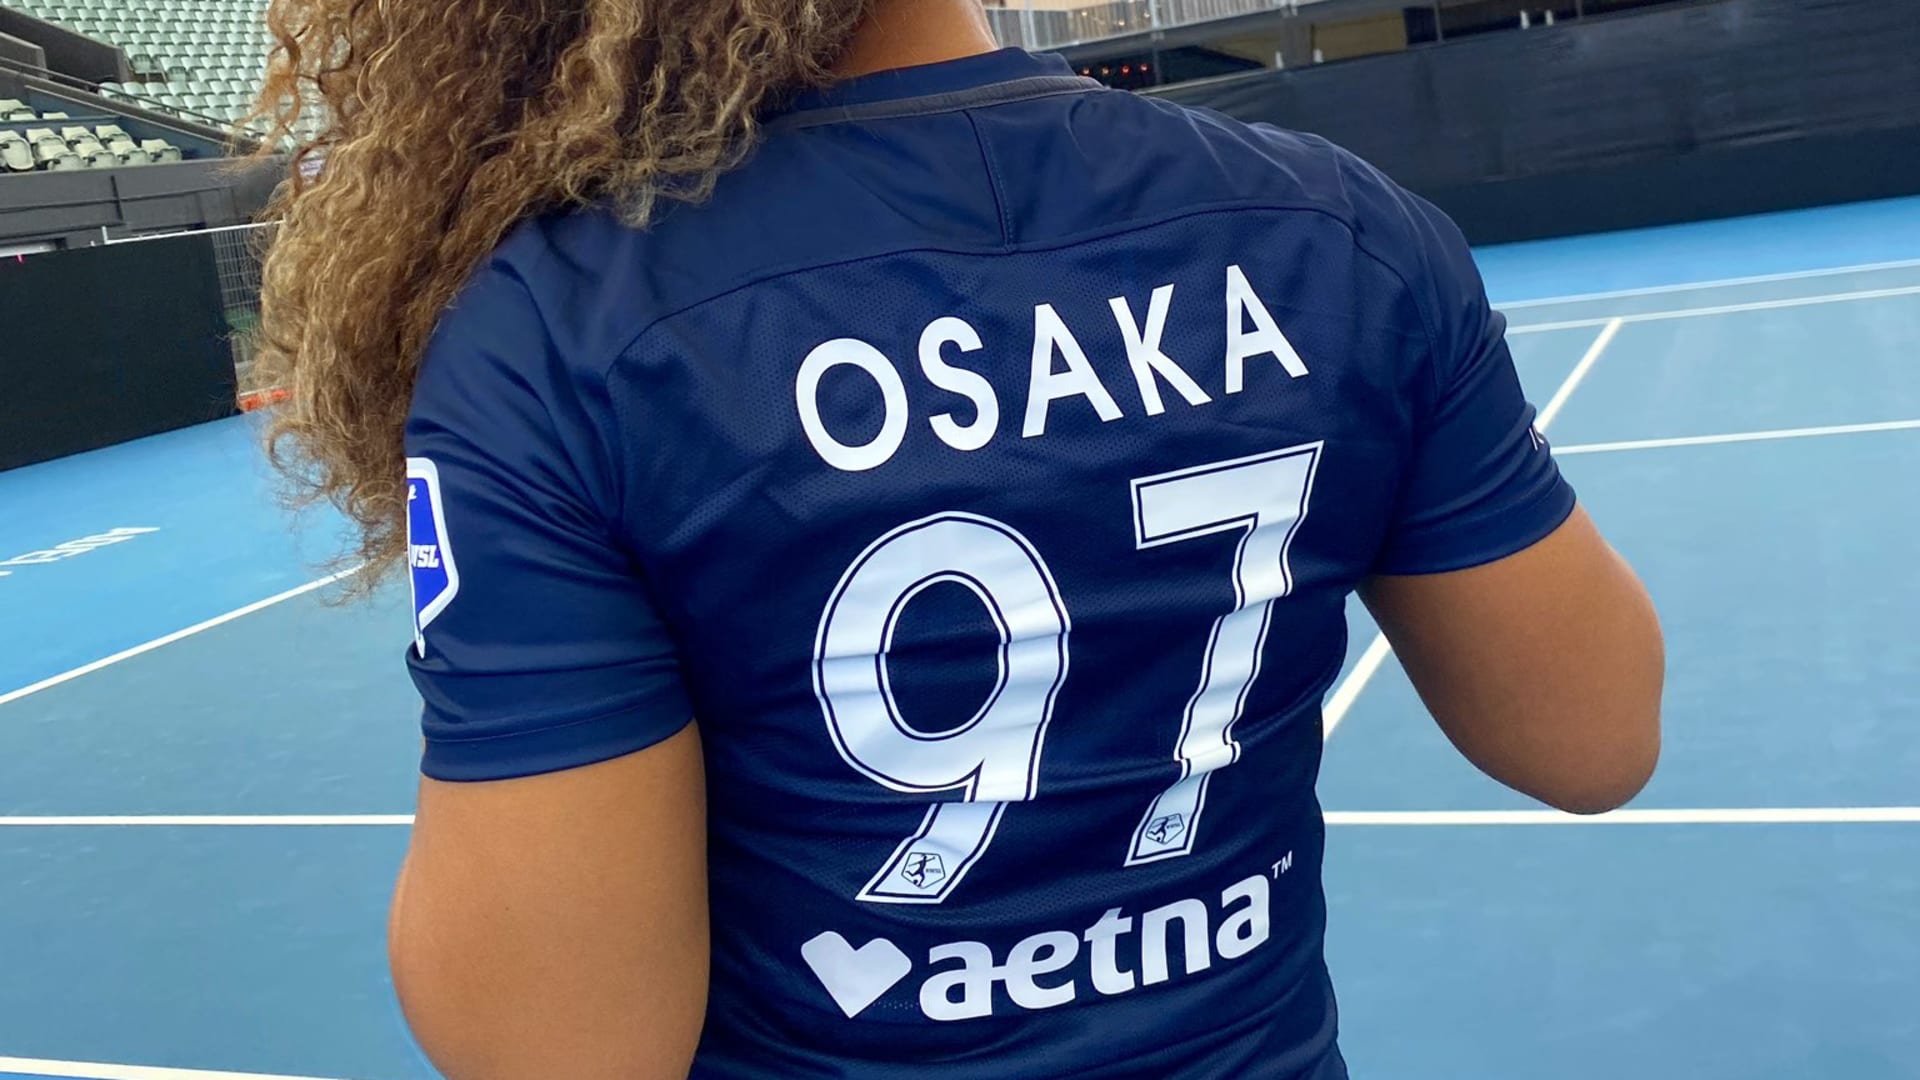 Naomi Osaka Women's Jersey